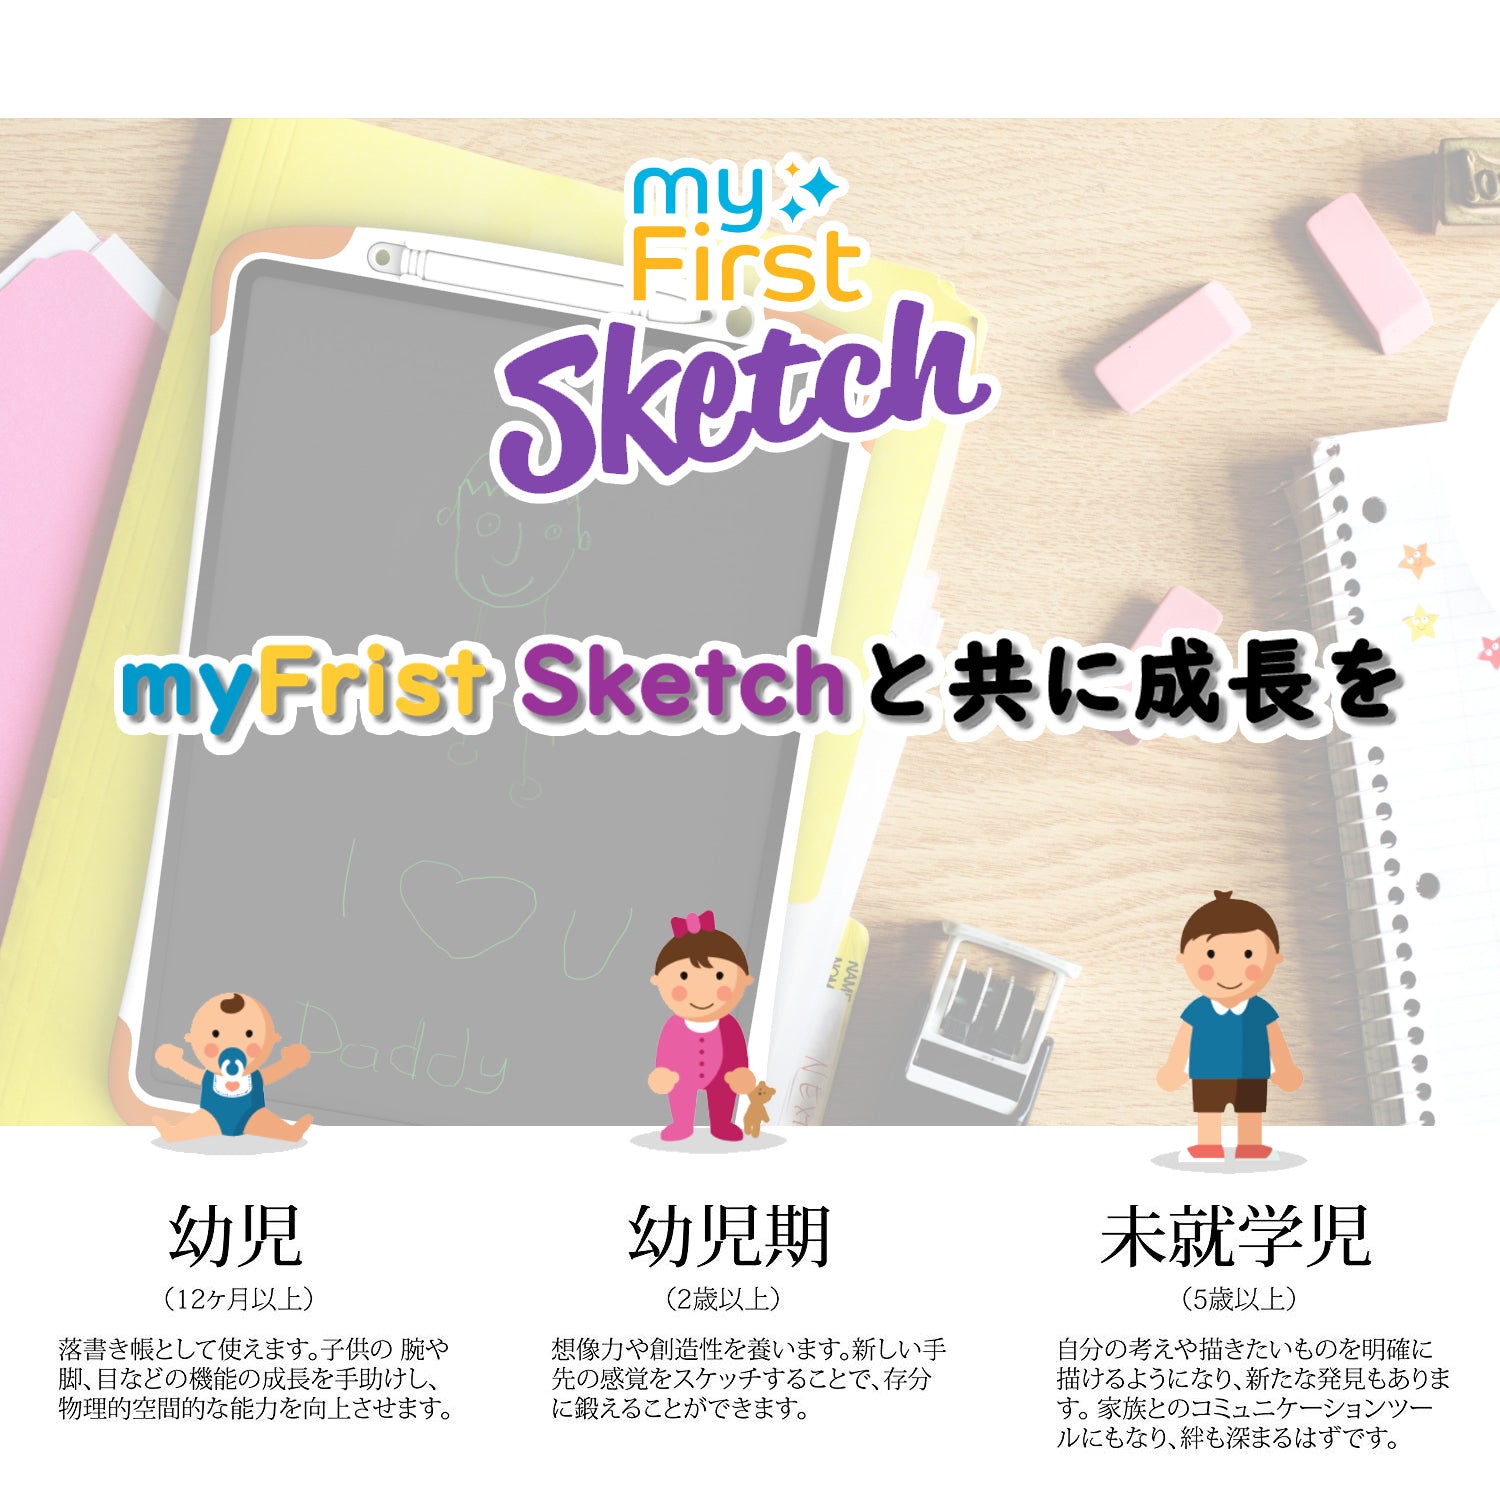 マイファーストスケッチ NEO myFirst Sketch NEO 電子スケッチ 七色 | Oaxis Japan.